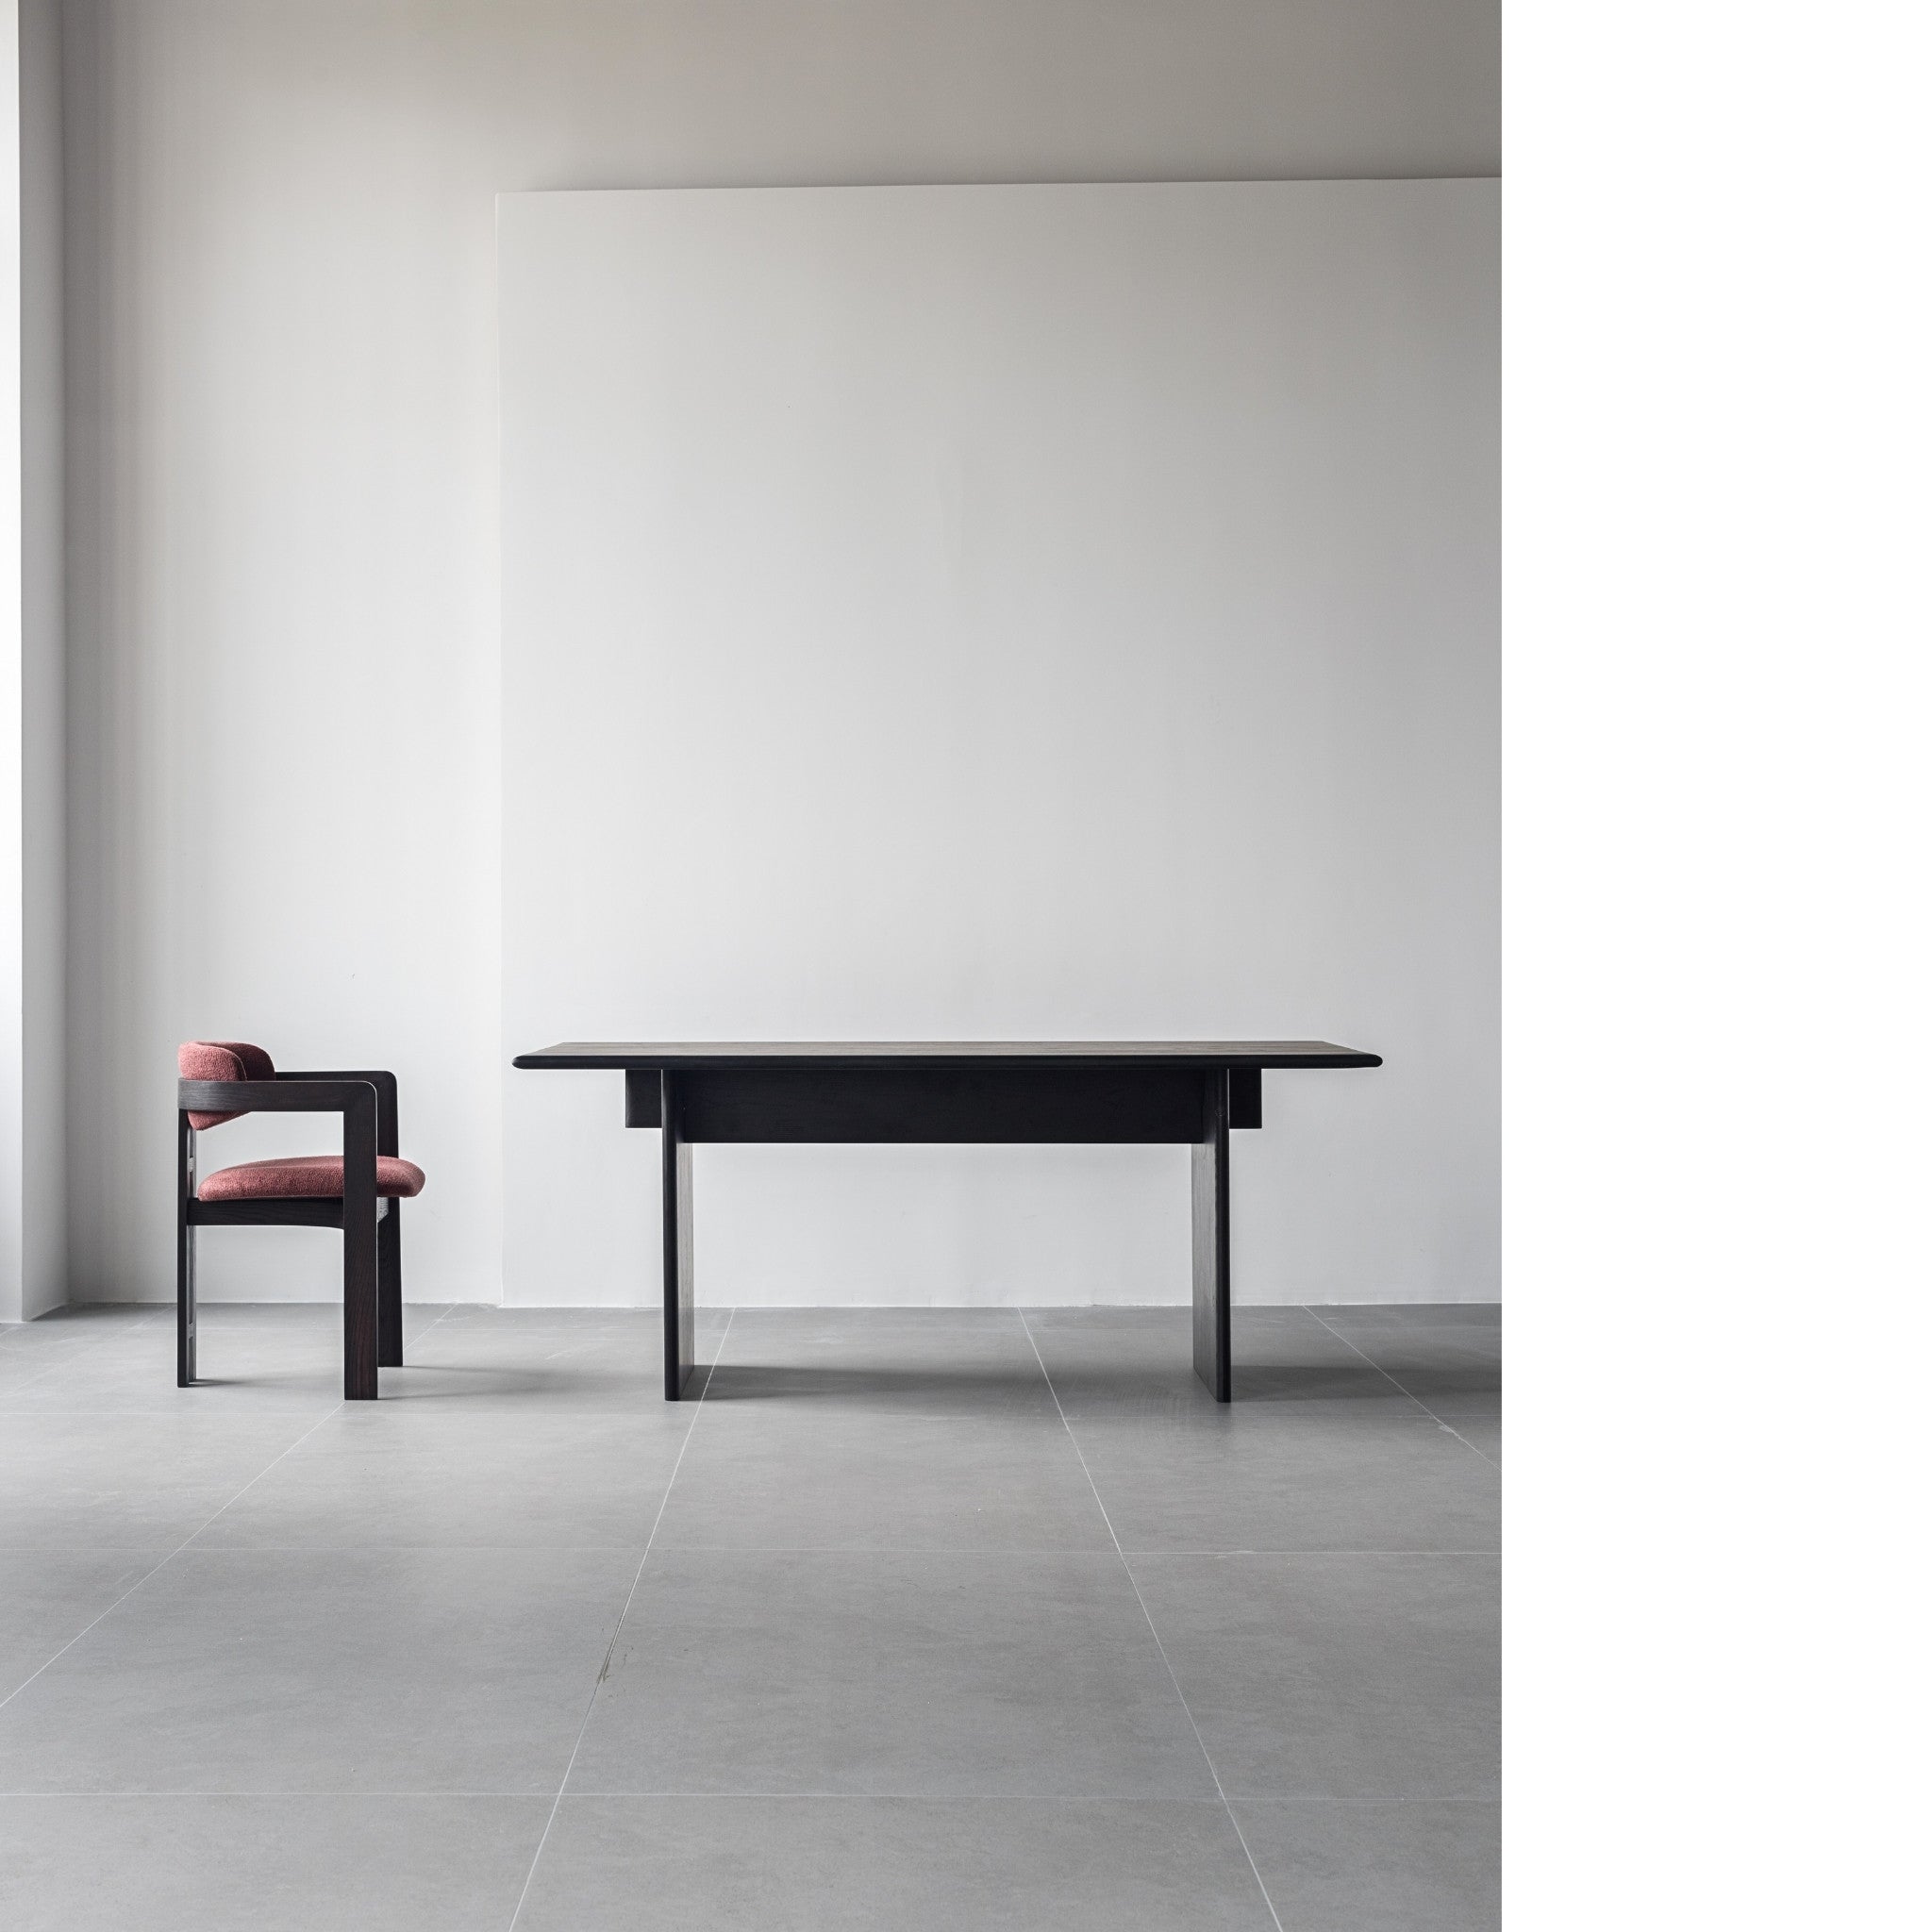 Pamplona Dining Chair | Augusto Savini Replica